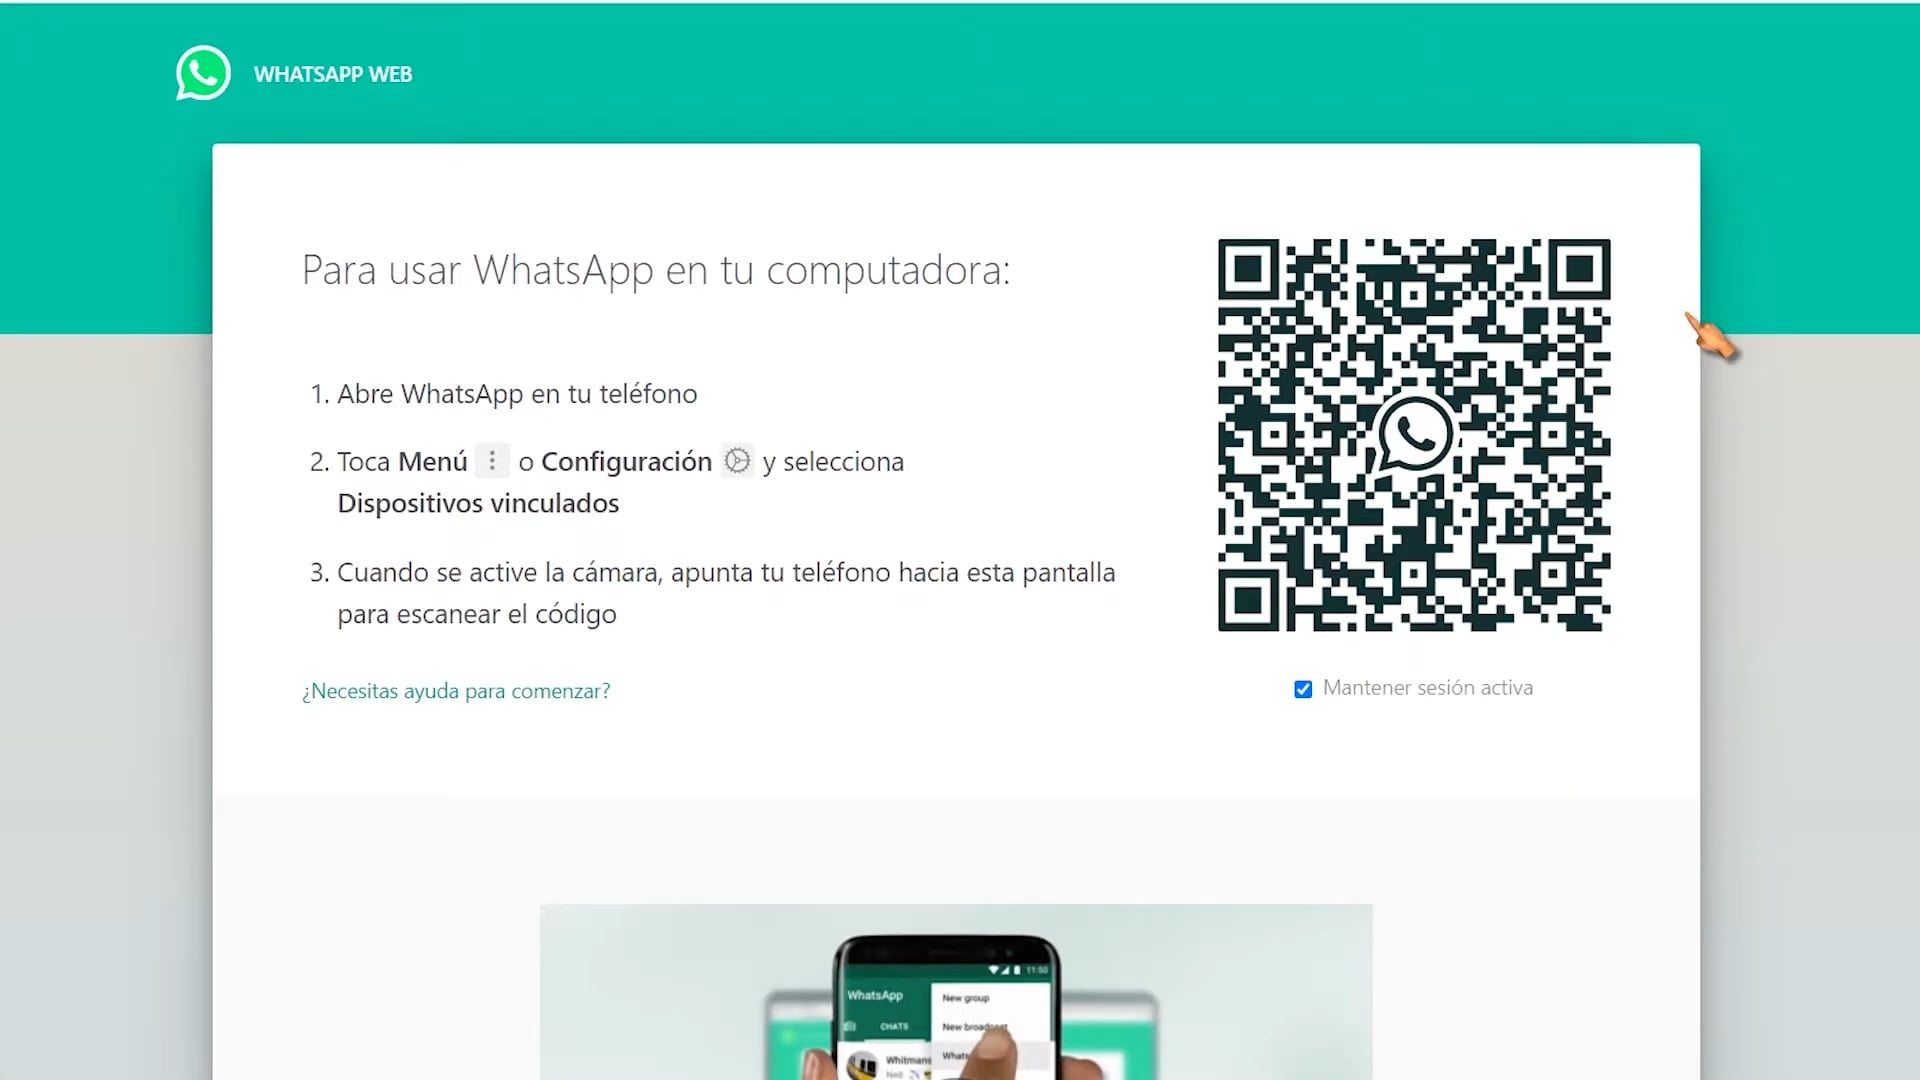 Whatsapp Web Guia Completa Como Usarlo Y Trucos 0855